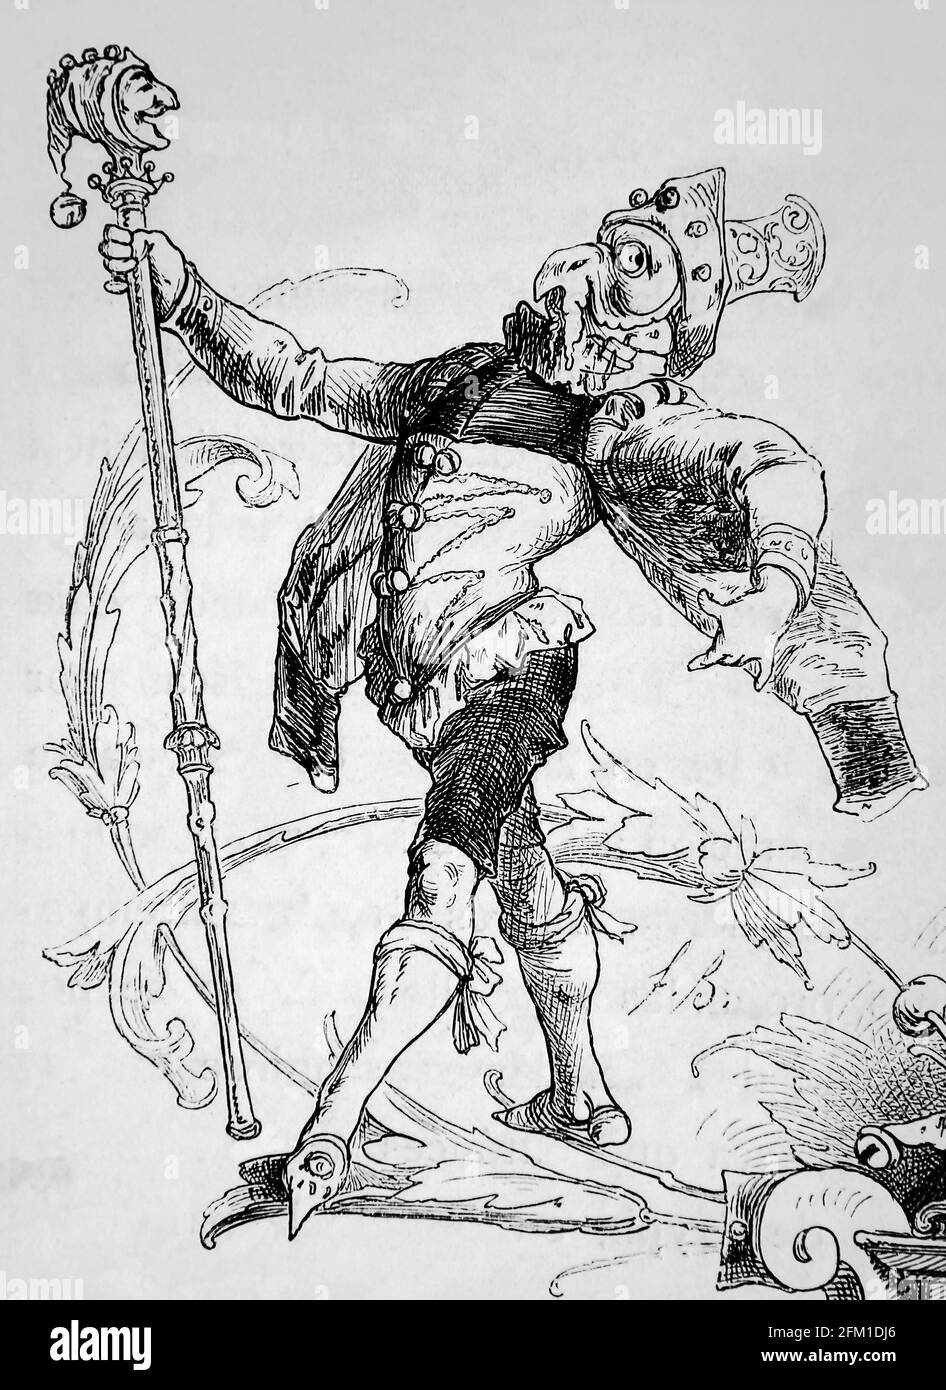 Période moderne. L'ère de la réforme. Allemagne. Acteurs de la comédie. Gravure, Germania, 1882. Banque D'Images